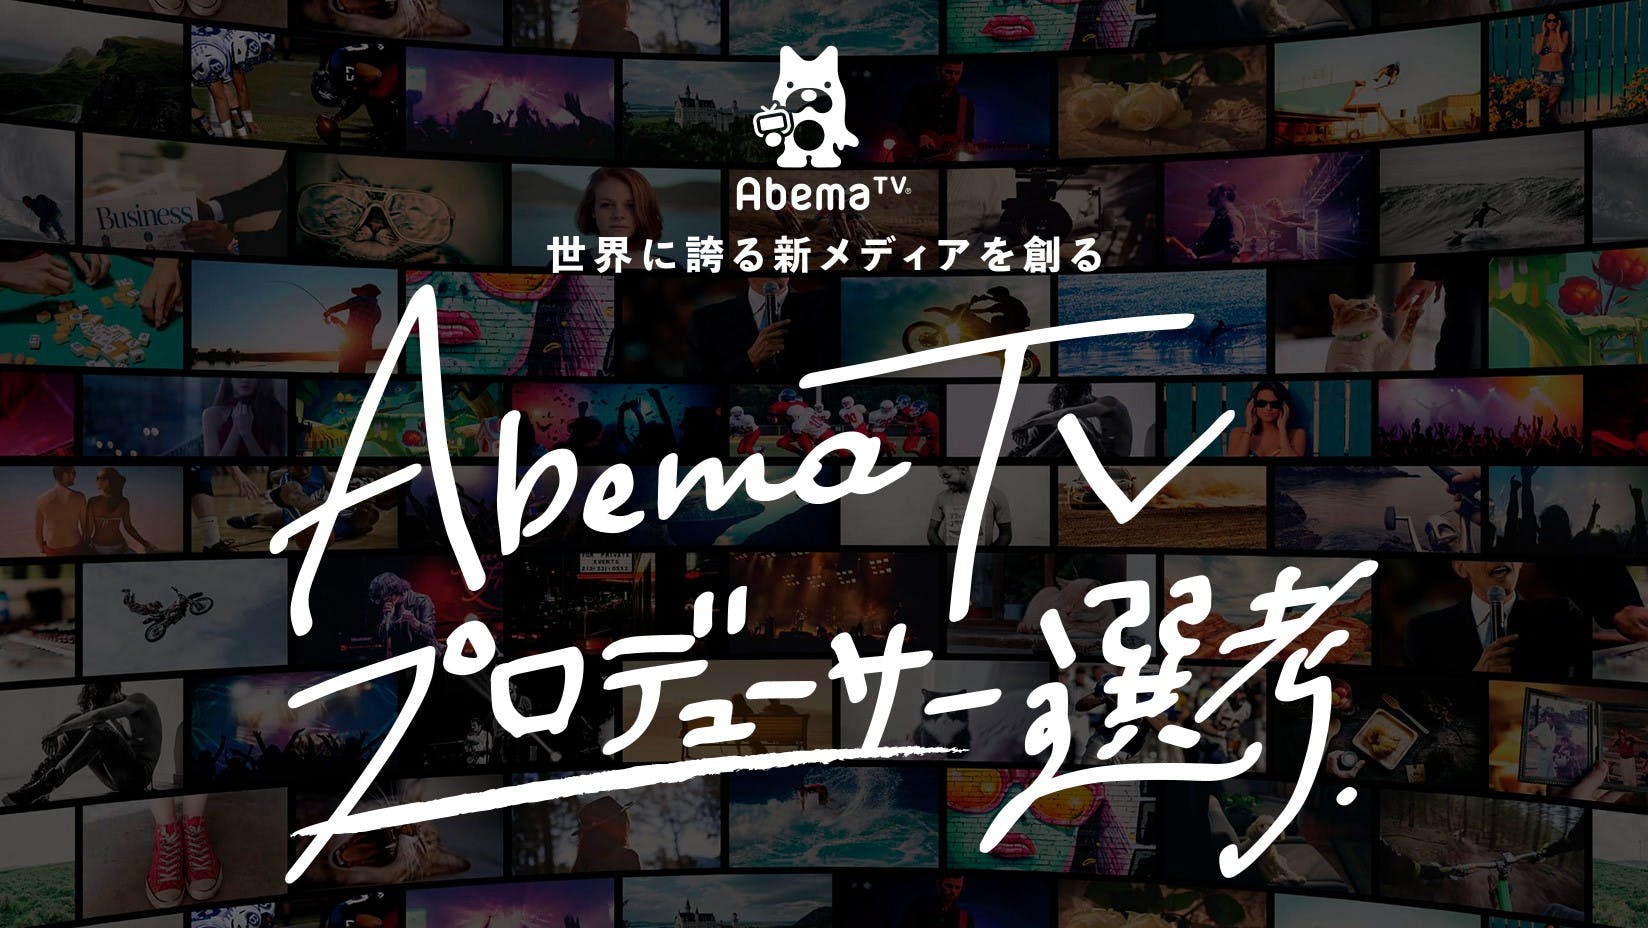 【内定直結】AbemaTVプロデューサー選考インターンシップ募集